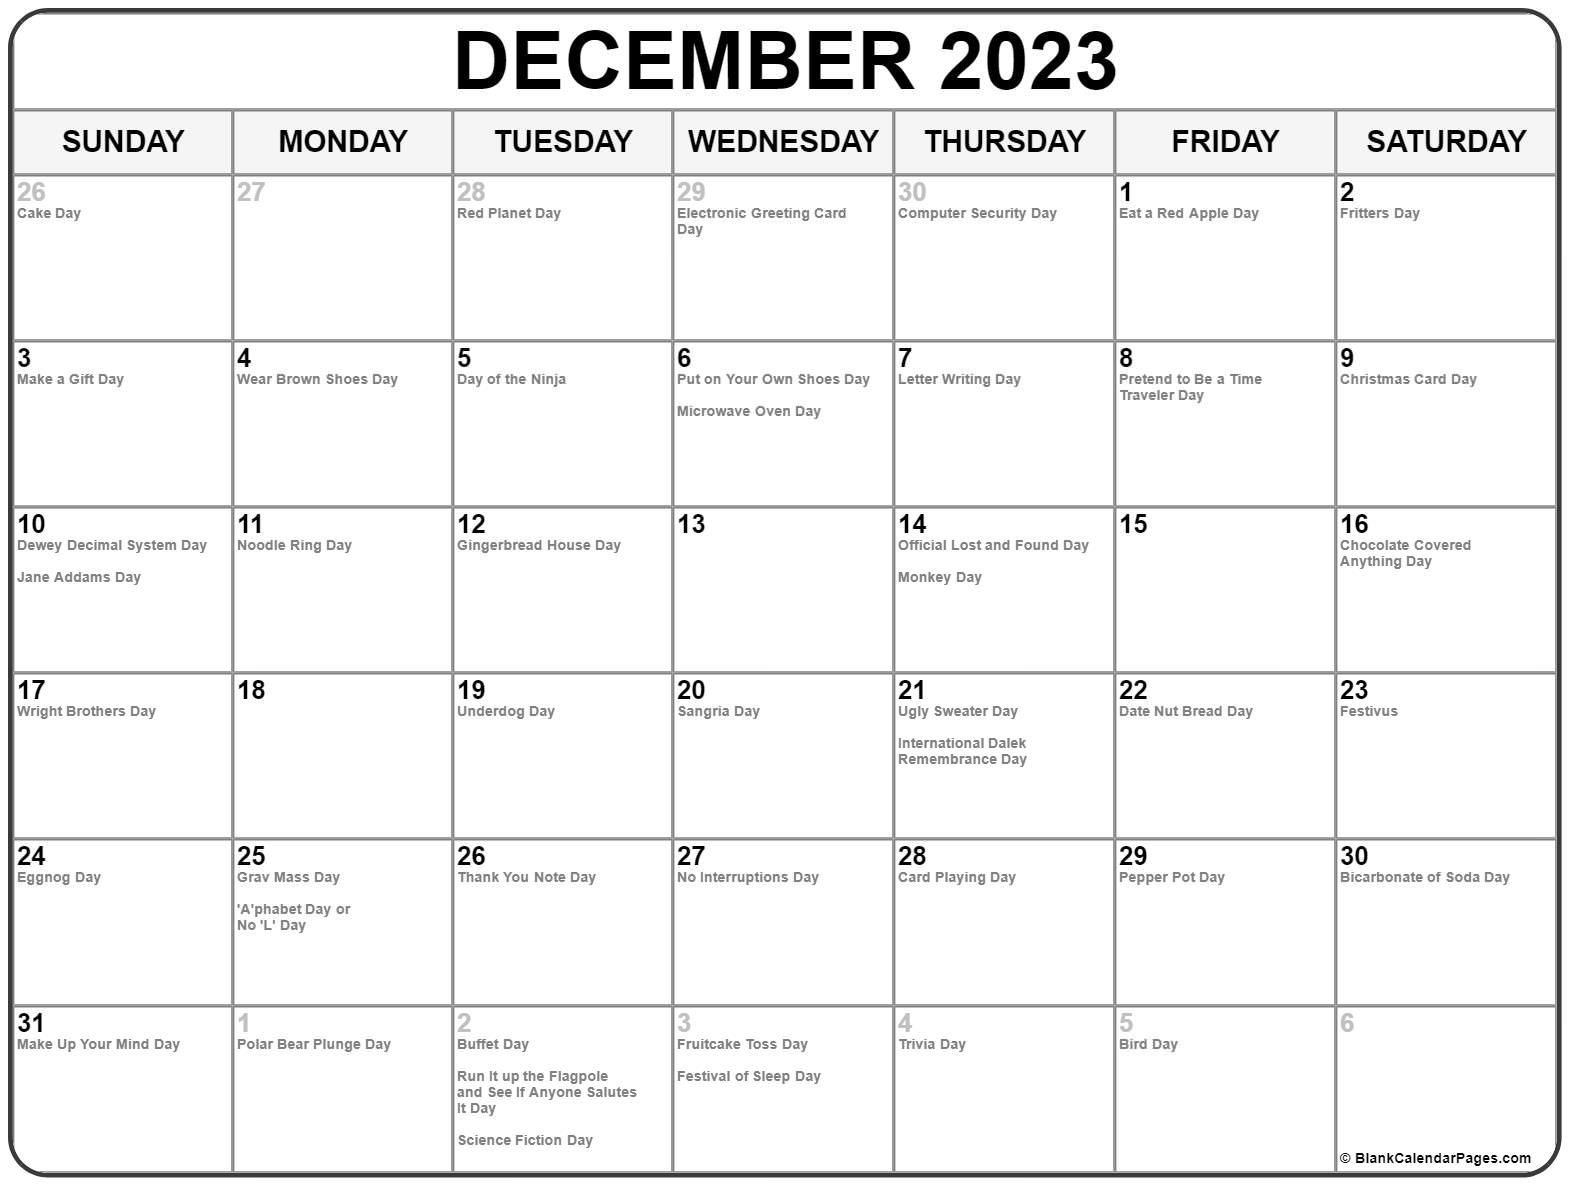 Календарь июль 2022